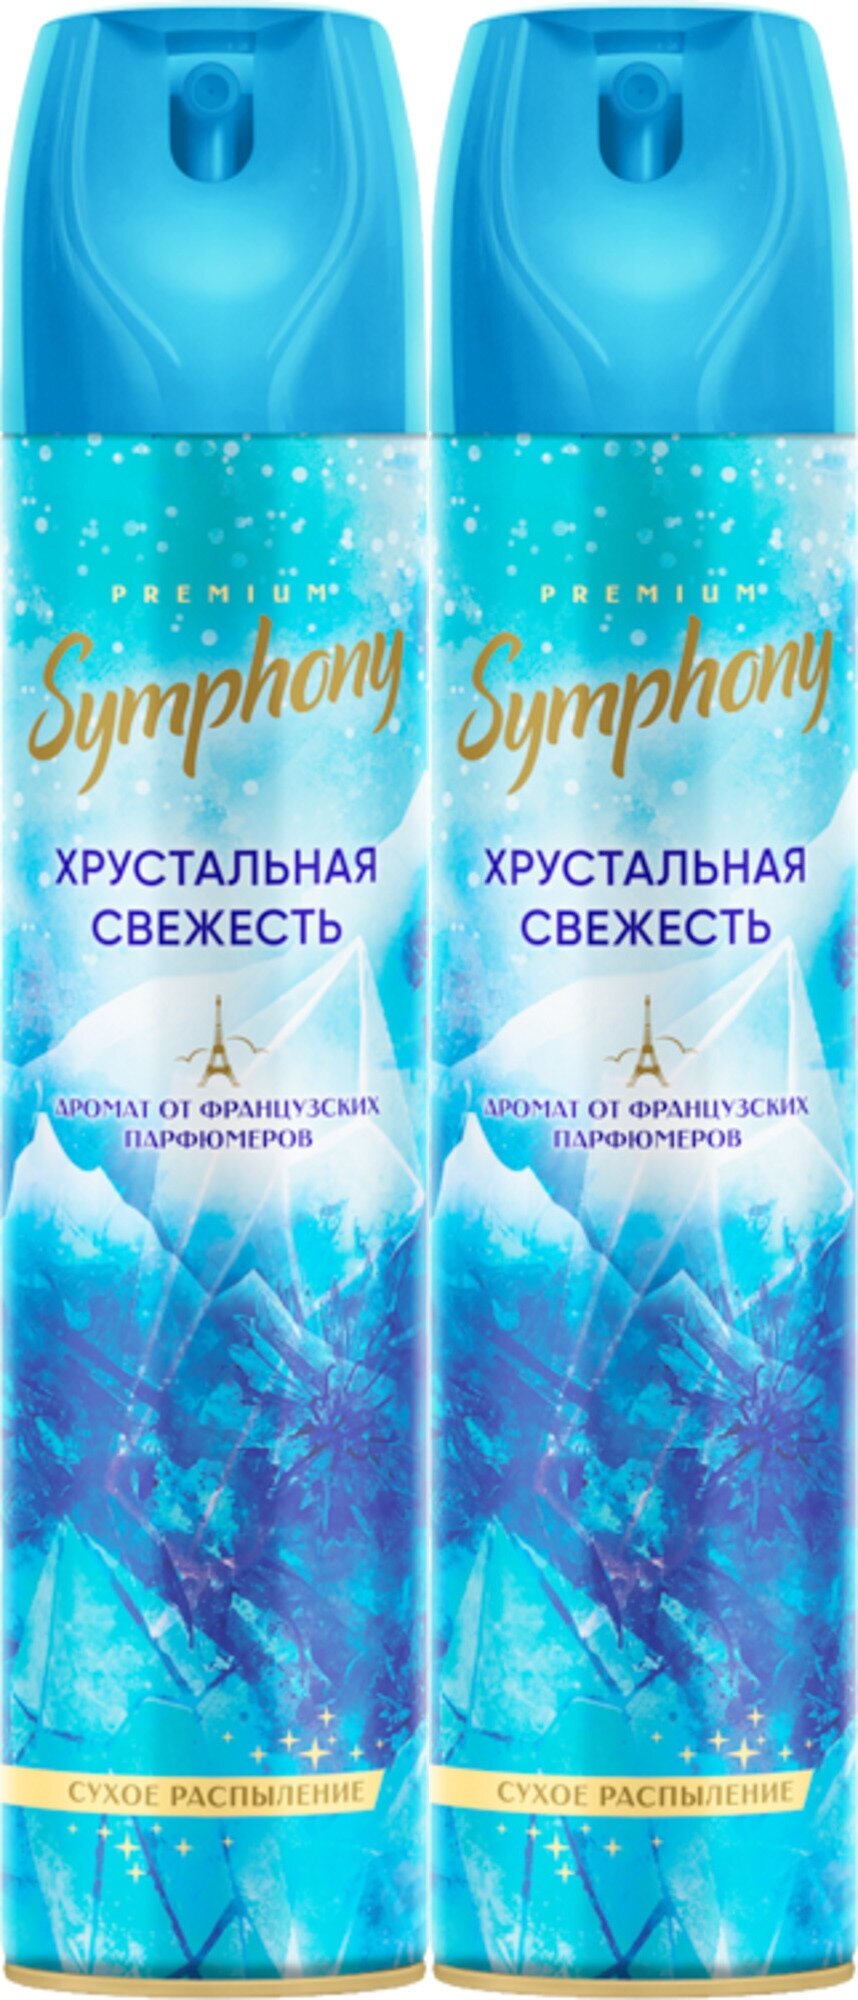 Symphony Expert Освежитель воздуха Premium Хрустальная свежесть, 300 мл, 2 шт